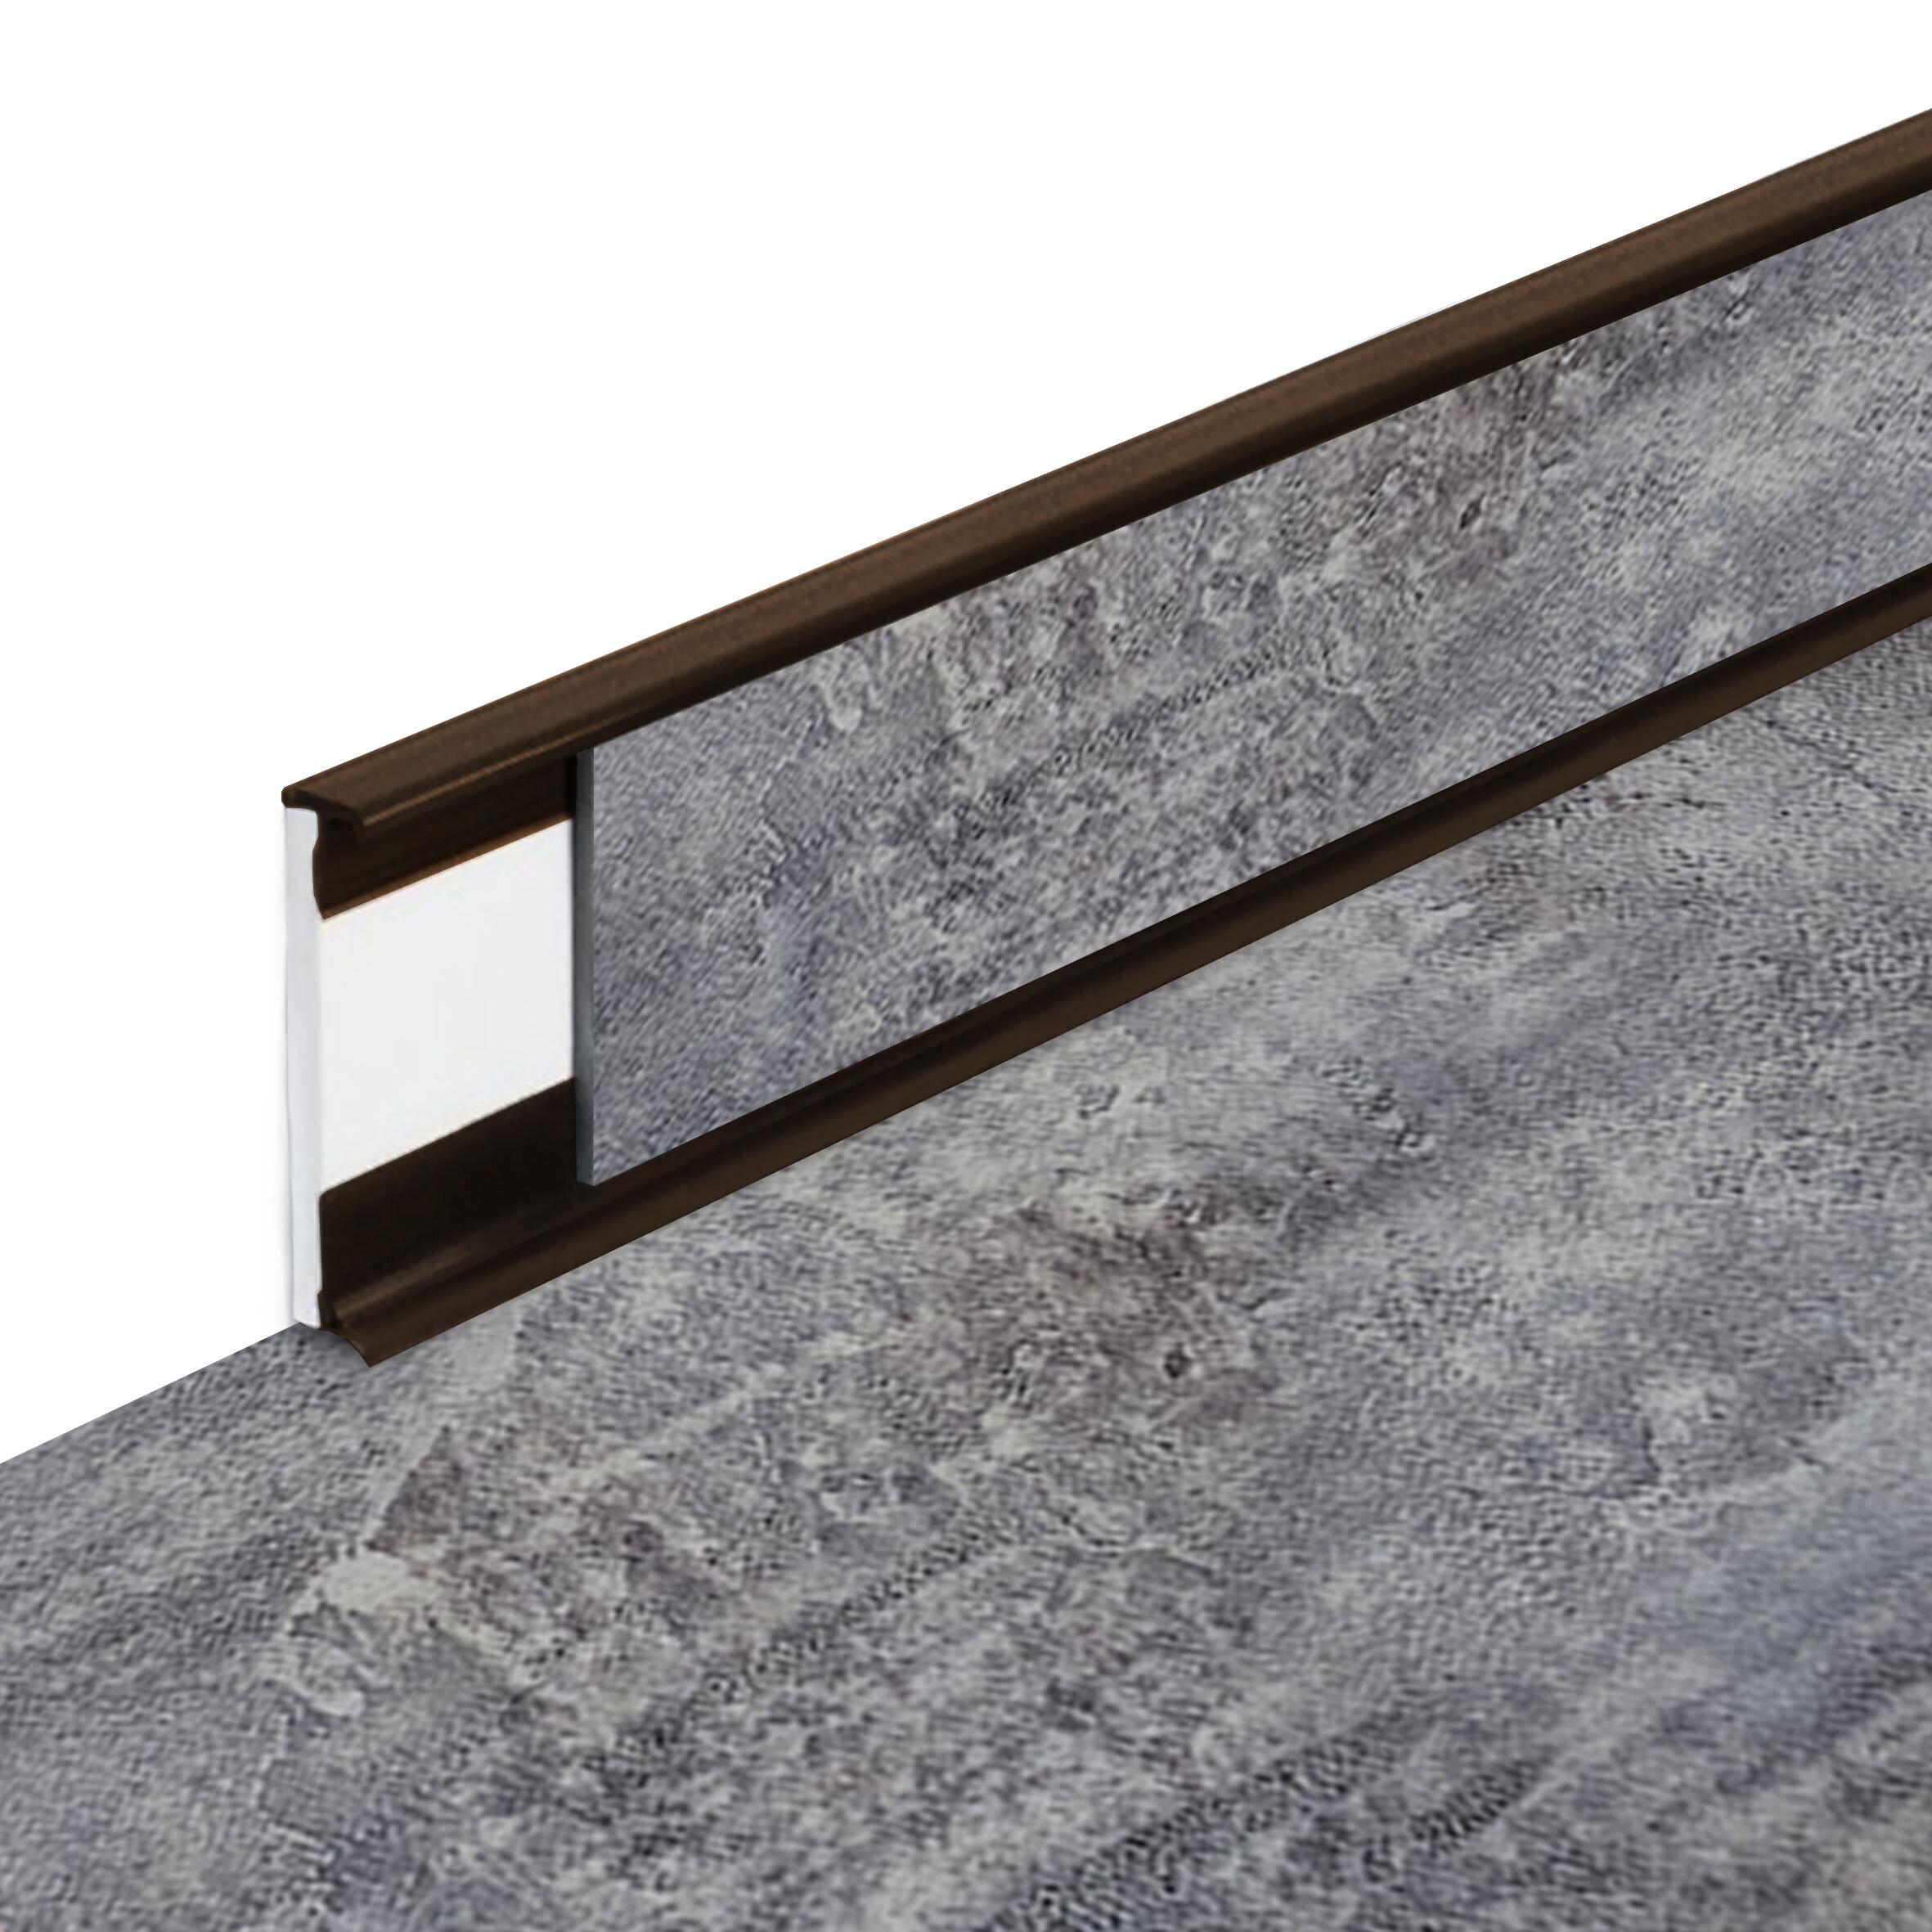 PVC vinylová soklová podlahová lišta Fortelock Business Forsen Mountain Peak C017 Brown - dĺžka 200 cm, výška 5,8 cm, hrúbka 1,2 cm